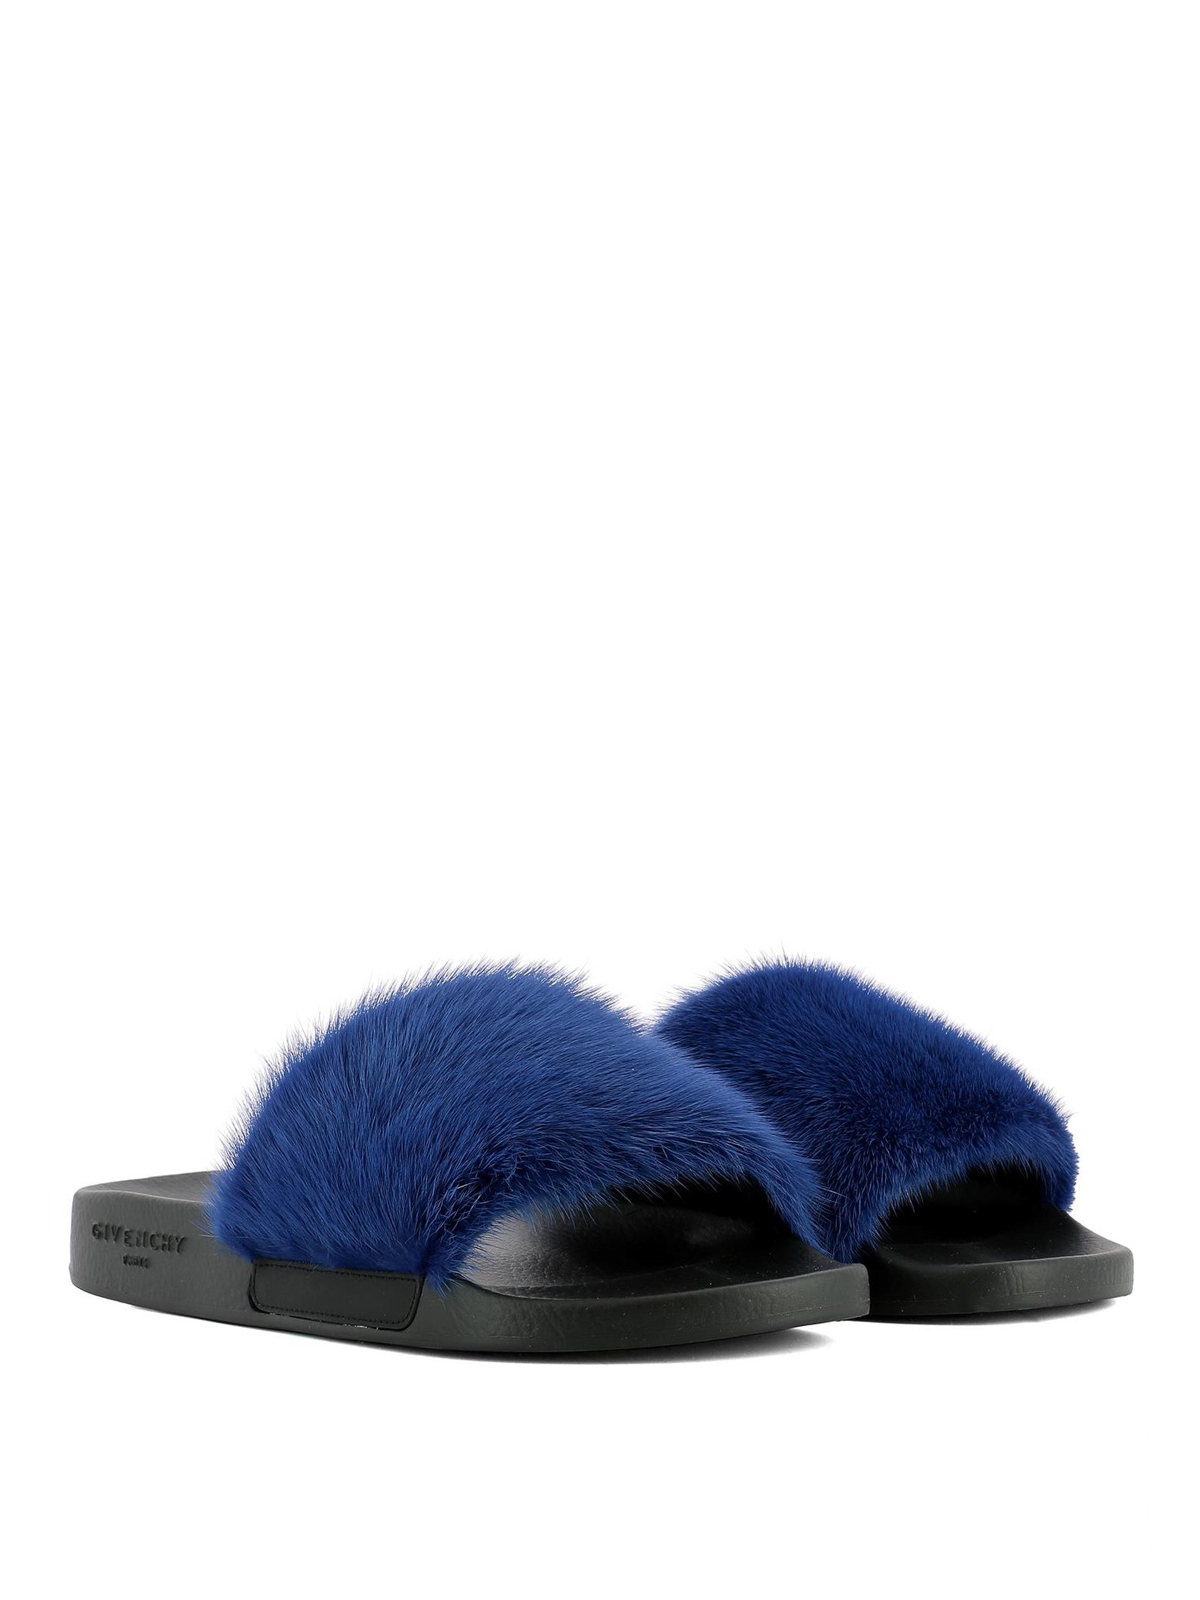 Sandals Givenchy - Blue mink fur slides - BE08209806422 